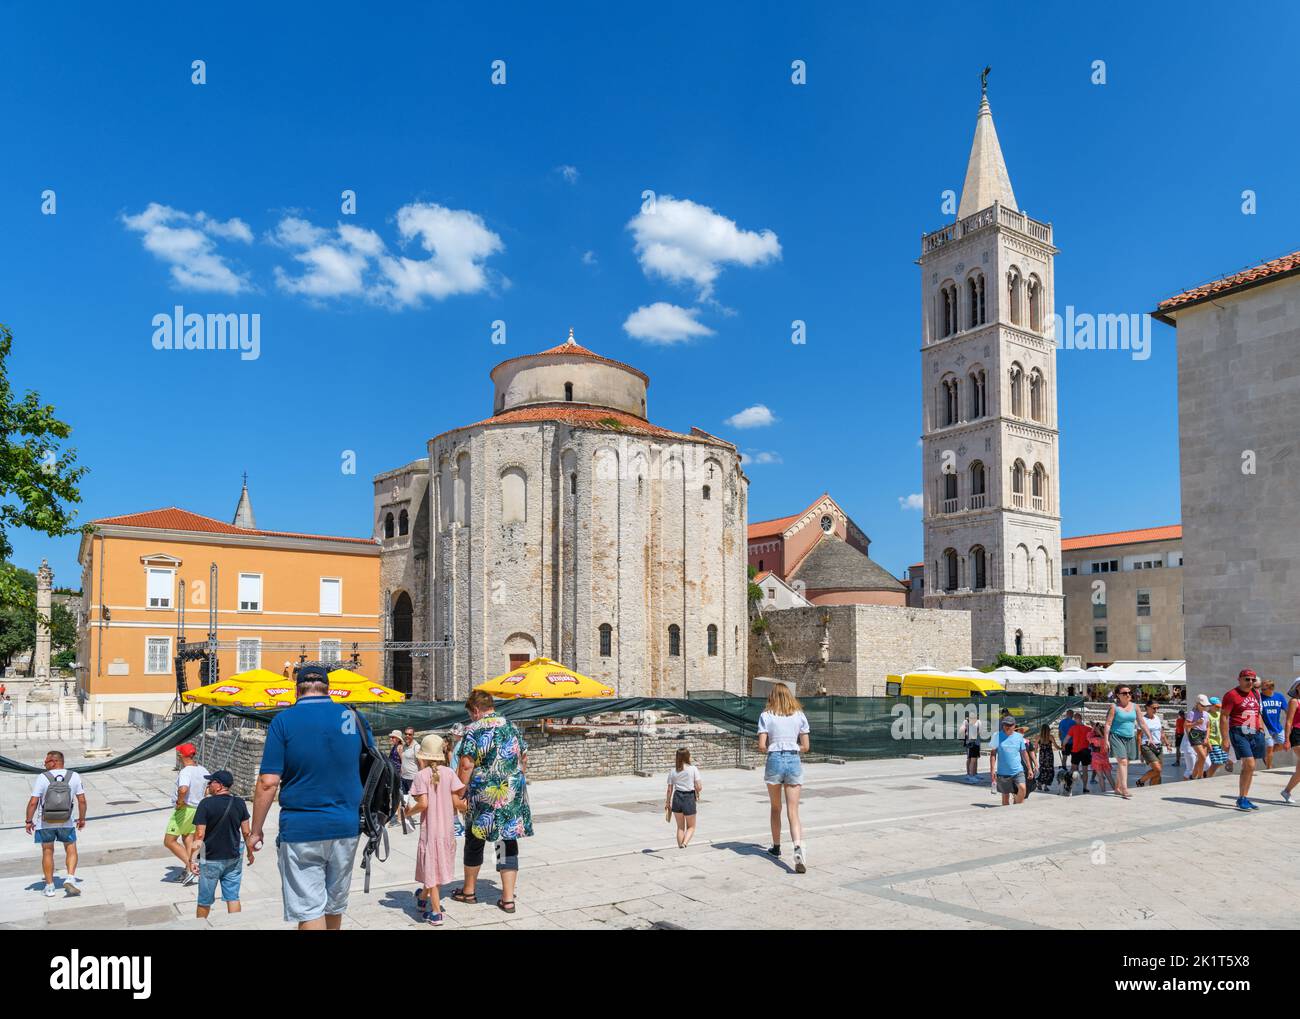 Le Forum romain, la cathédrale St Anastasia et l'église St Donatus dans le centre historique de Zadar, Croatie Banque D'Images